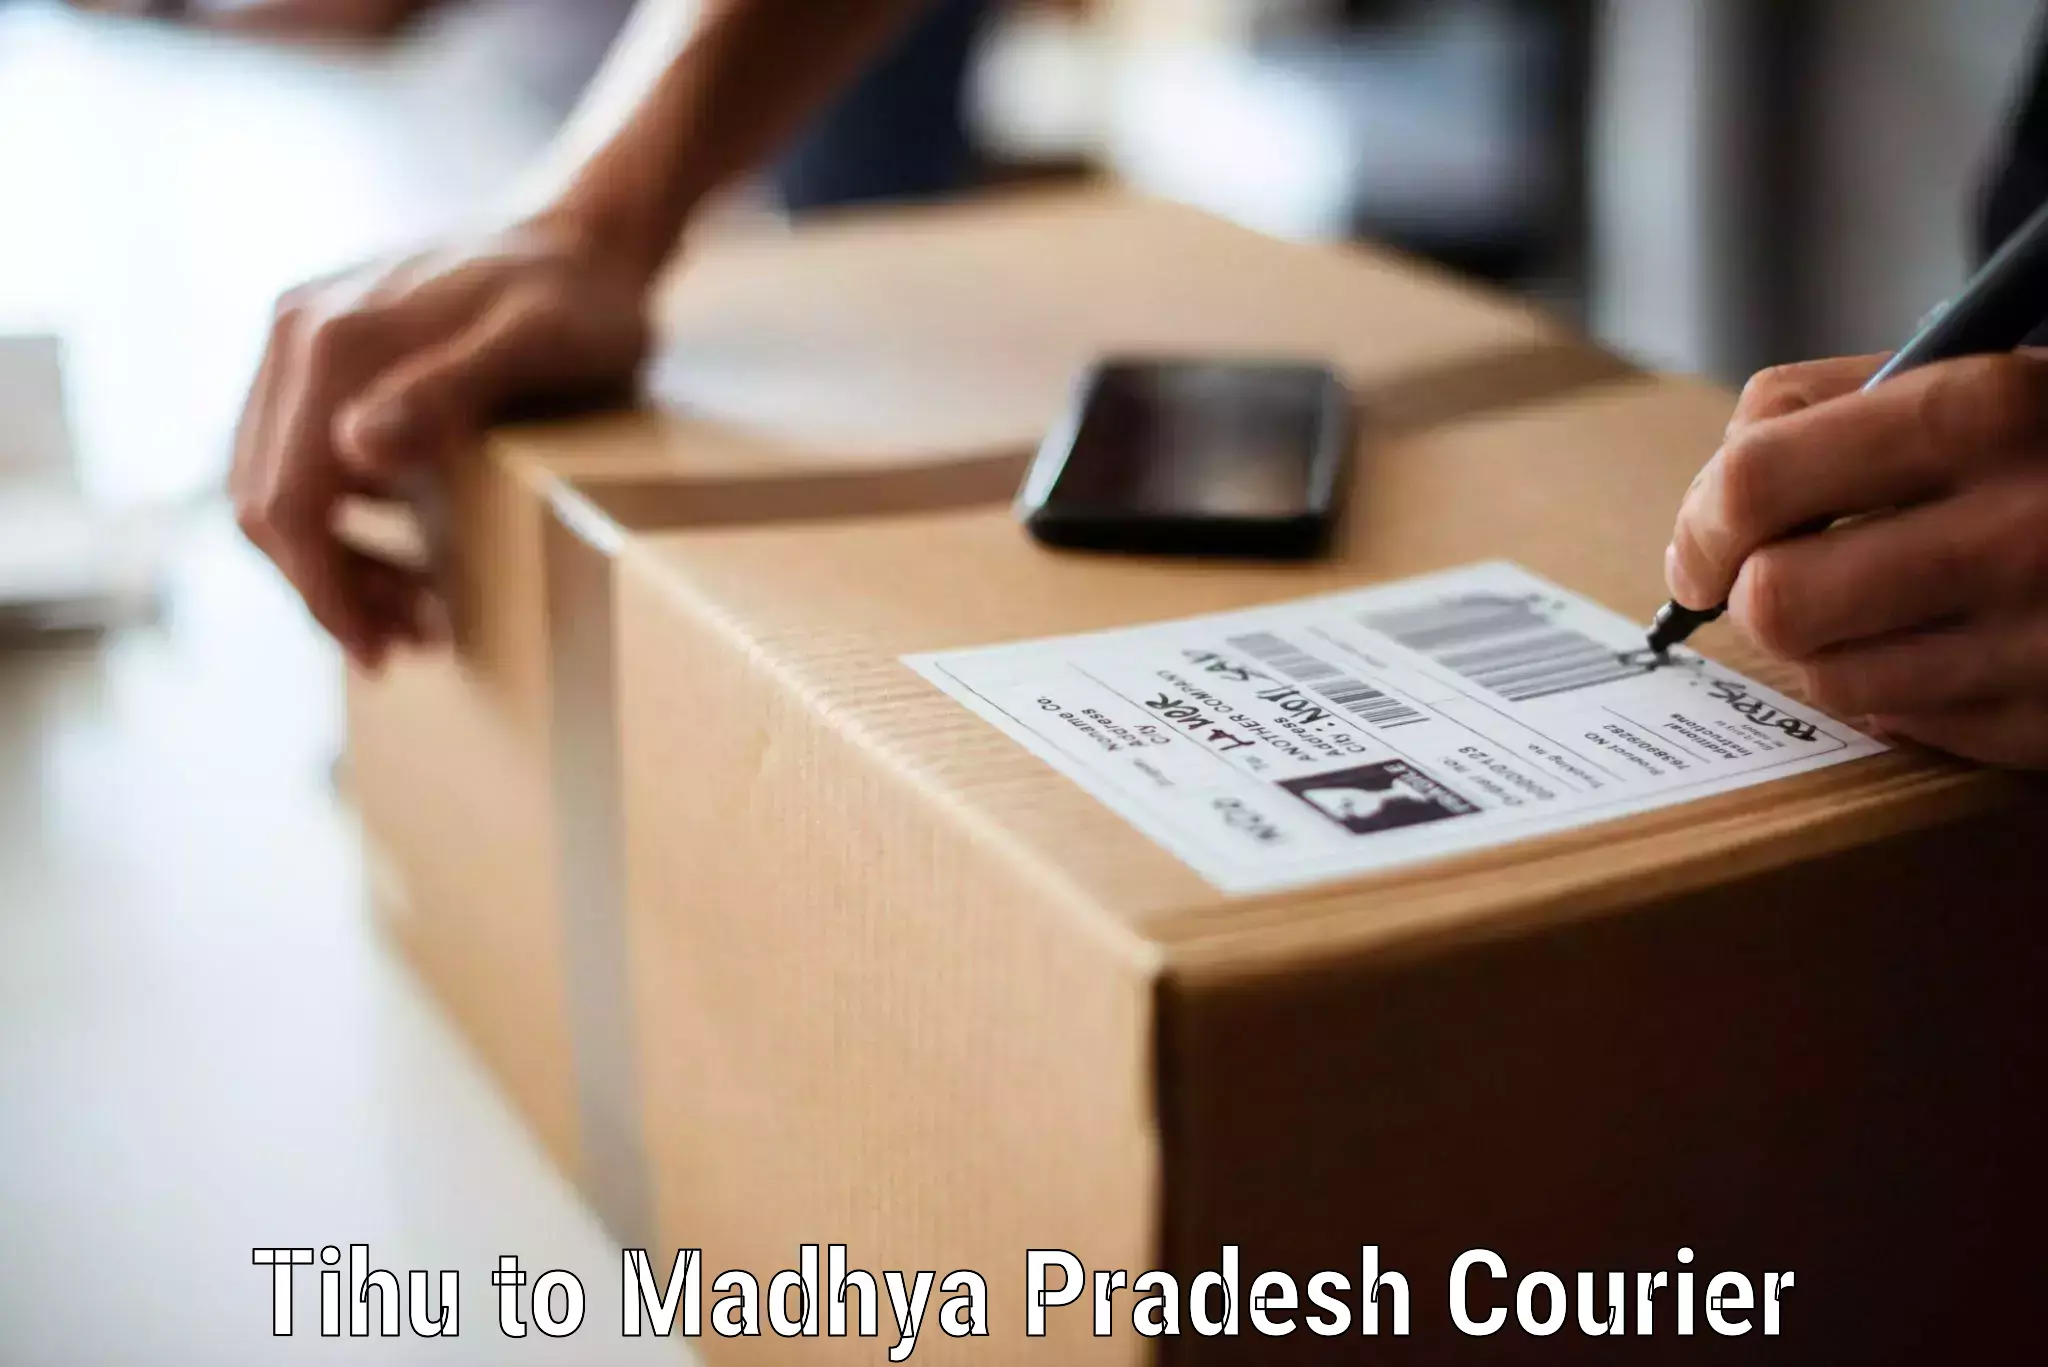 Efficient home movers Tihu to Madhya Pradesh